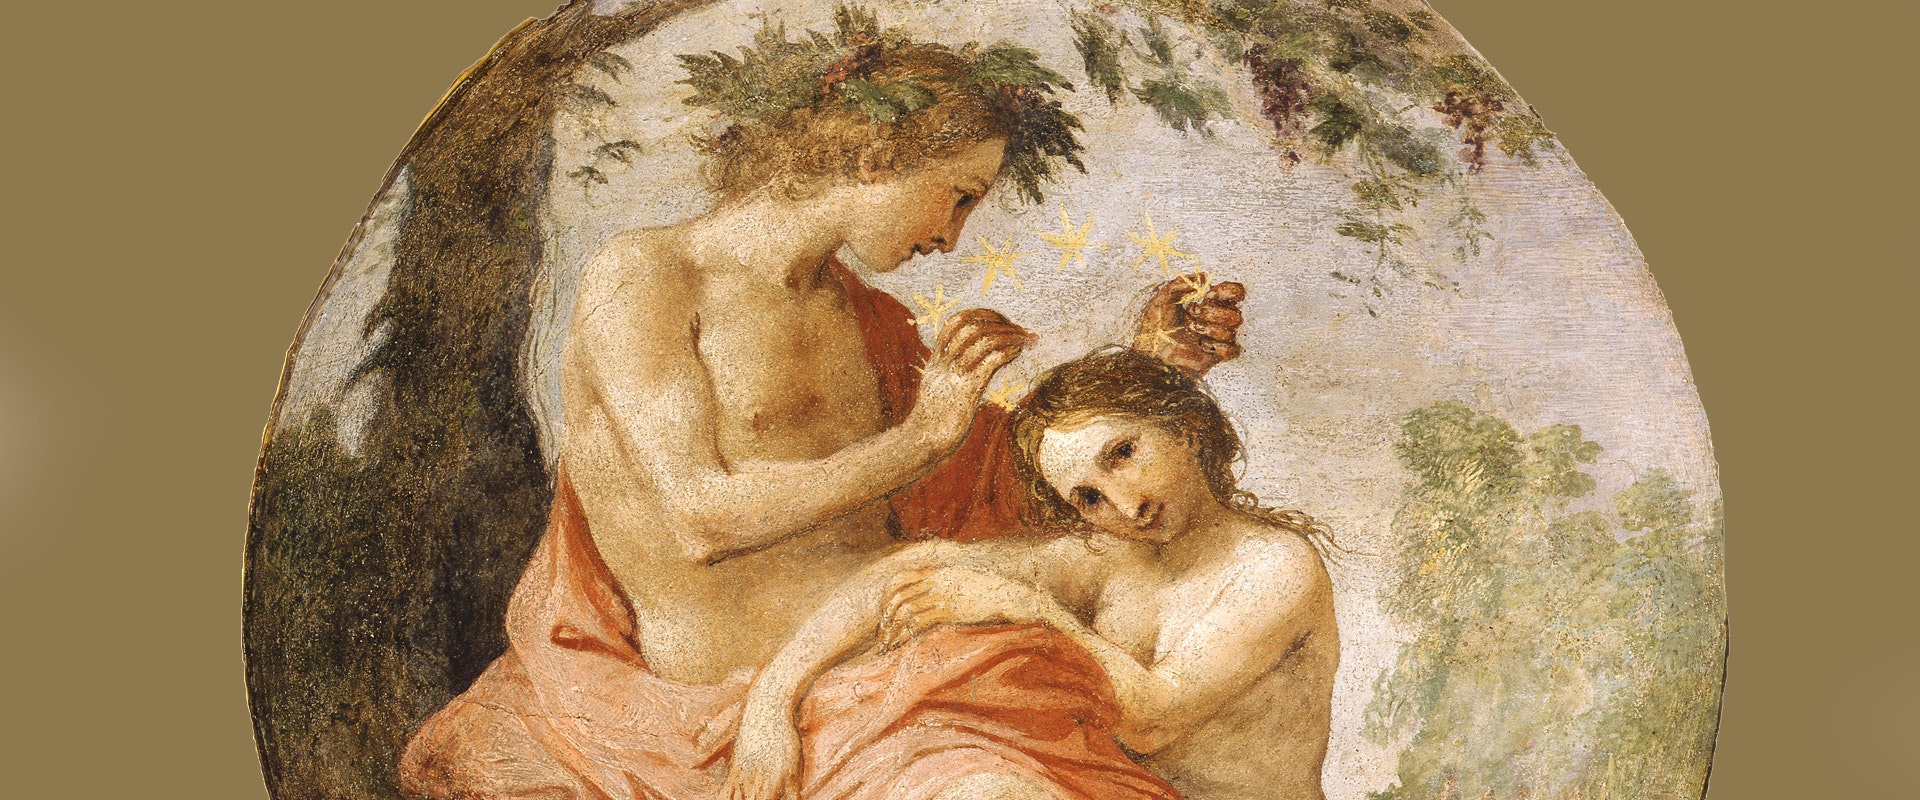 Bizzarro e capriccioso umore’. Giovanni da San Giovanni, pittore senza regola alla corte medicea